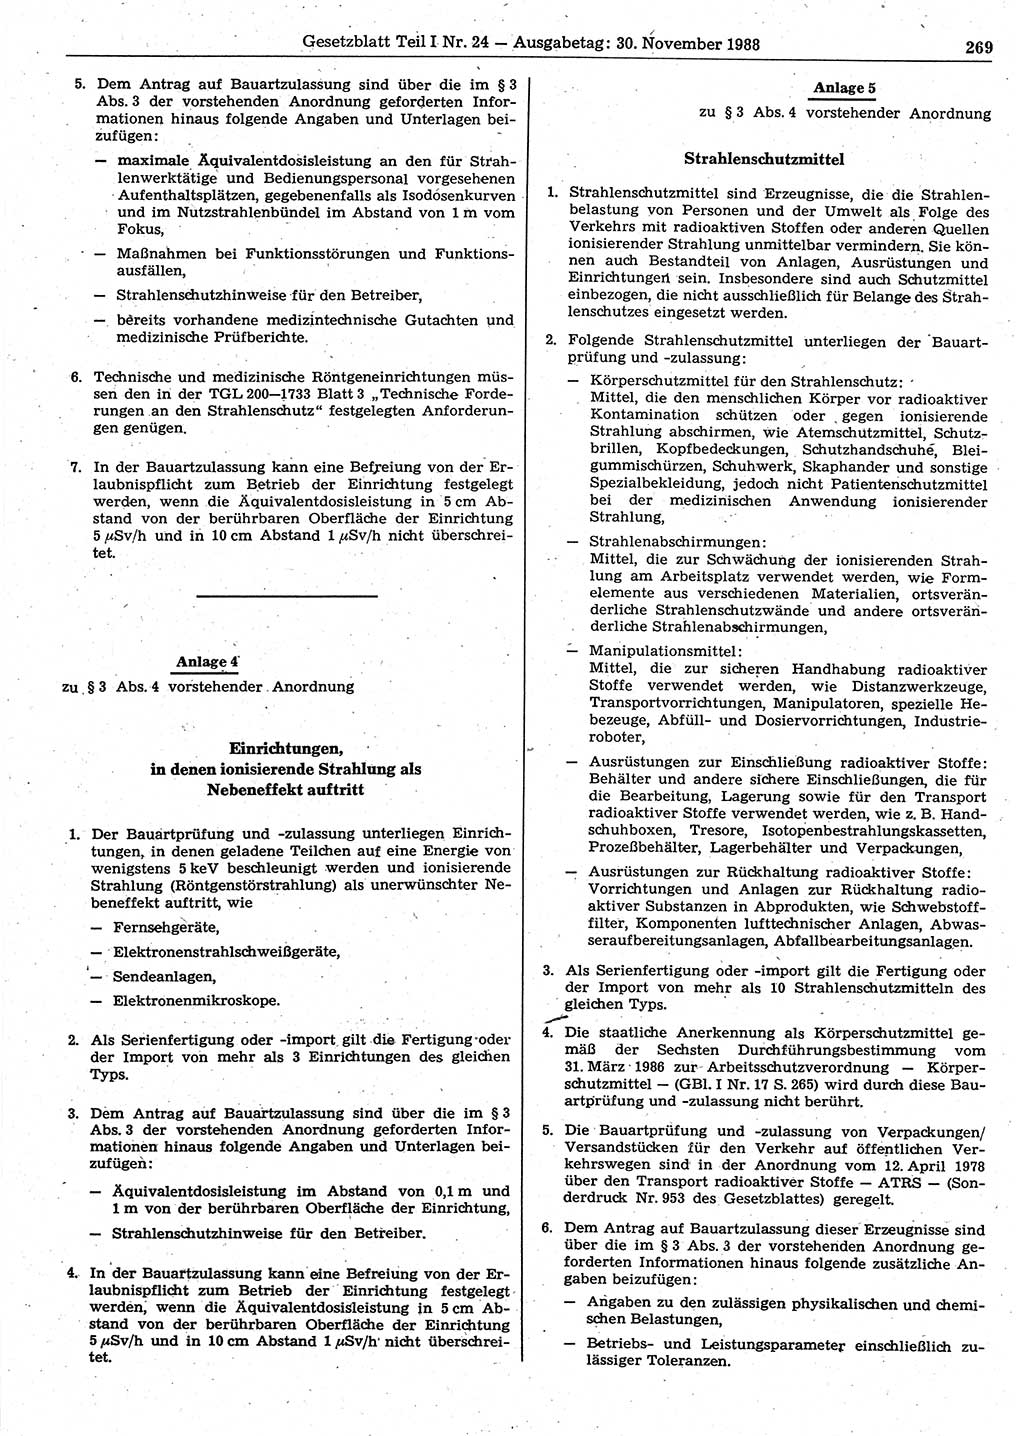 Gesetzblatt (GBl.) der Deutschen Demokratischen Republik (DDR) Teil Ⅰ 1988, Seite 269 (GBl. DDR Ⅰ 1988, S. 269)